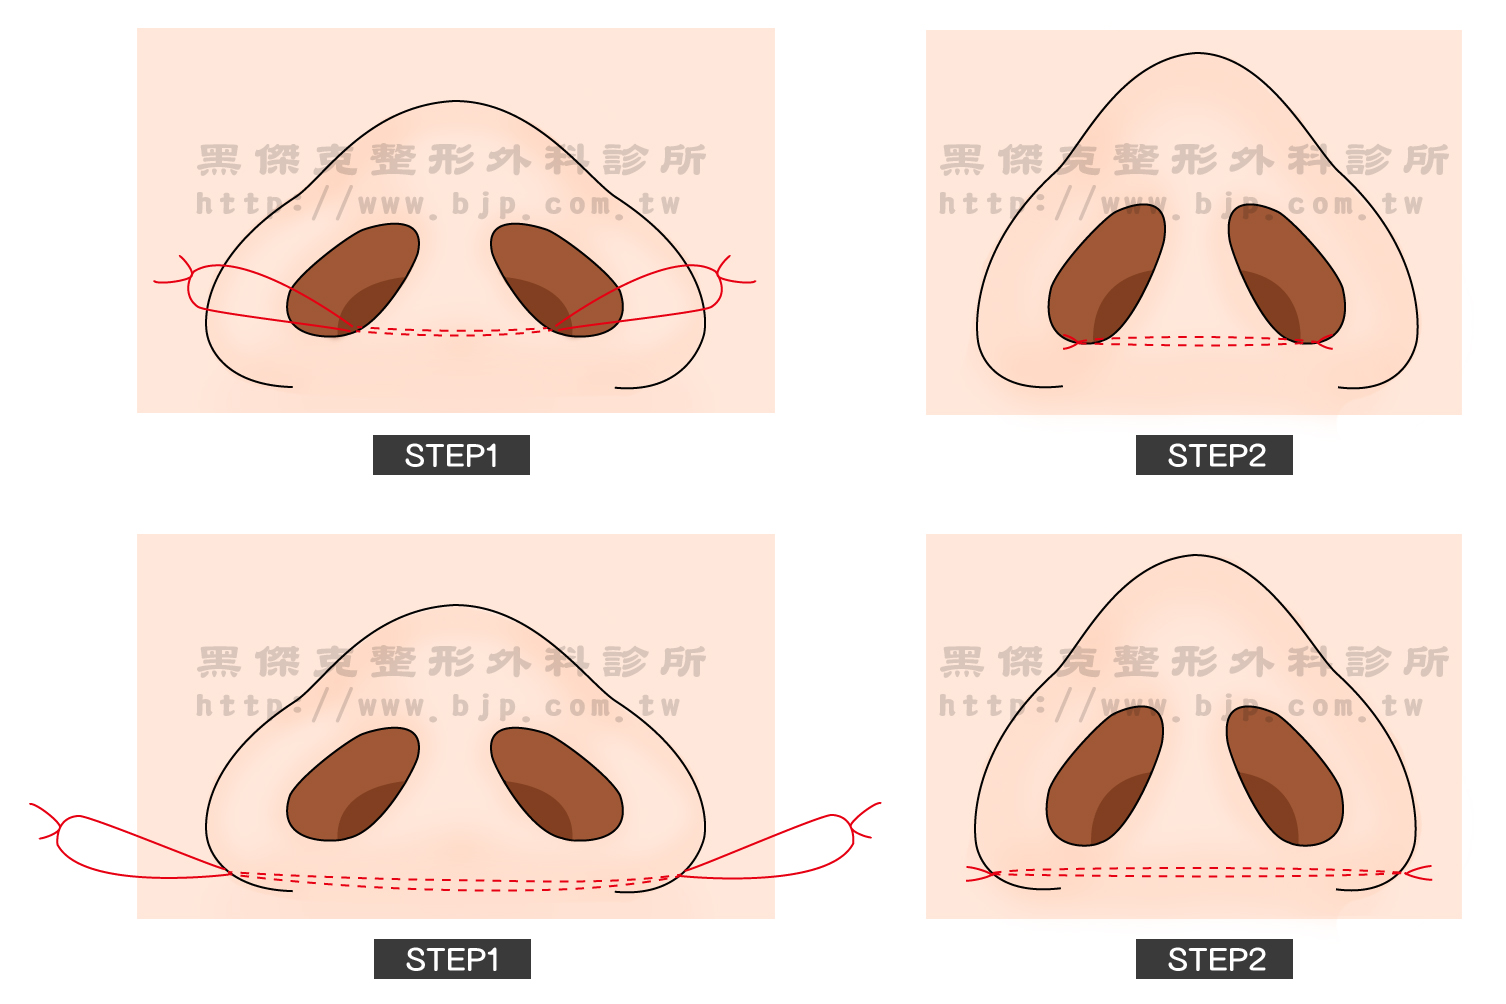 寬鼻翼矯正手術,透過由鼻孔內(鼻翼內側)將部分的鼻肉組織切除後，在以縫線穿越鼻中柱底部將兩邊鼻翼往中間固定，即可達到將鼻翼往內收效果，鼻孔也可以同時縮小。